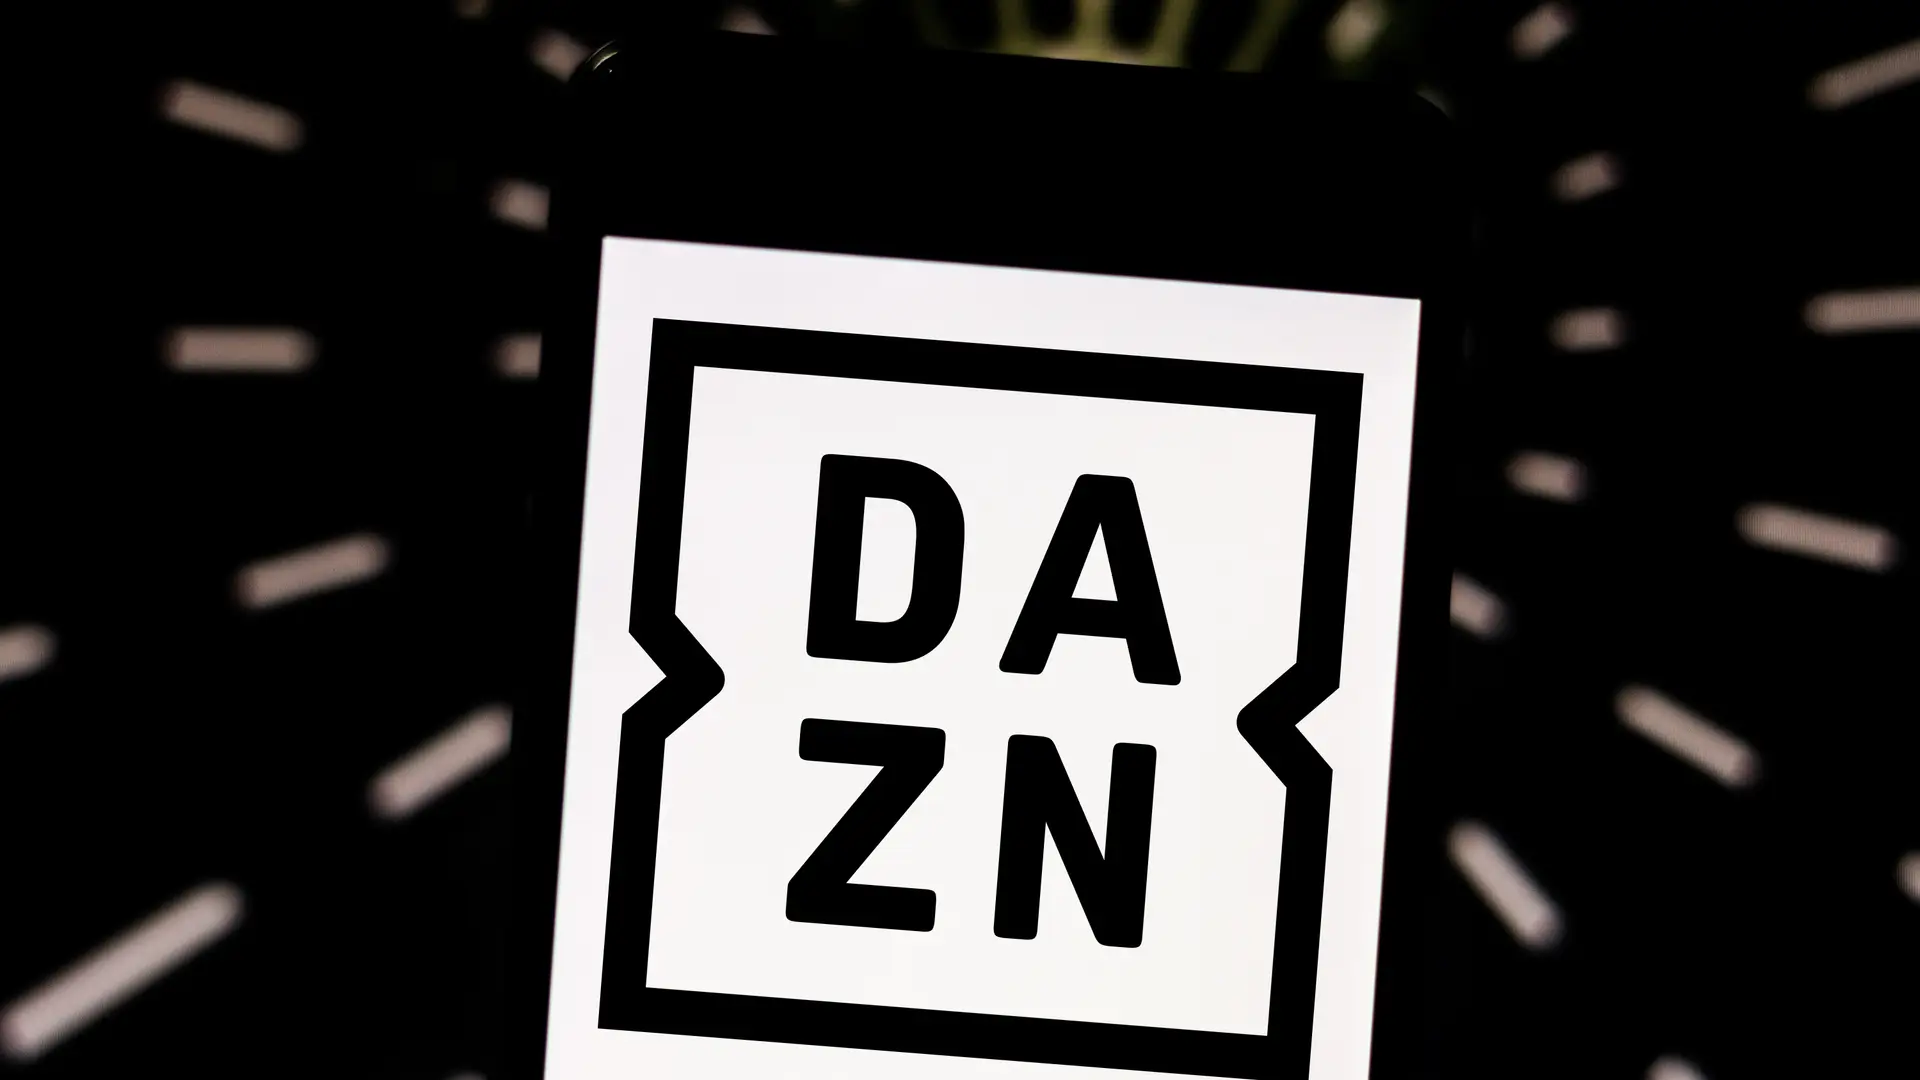 Logotipo de Dazn en una pantalla de movil que hace eferencia a como contratar este tipo de televisión con Vodafone